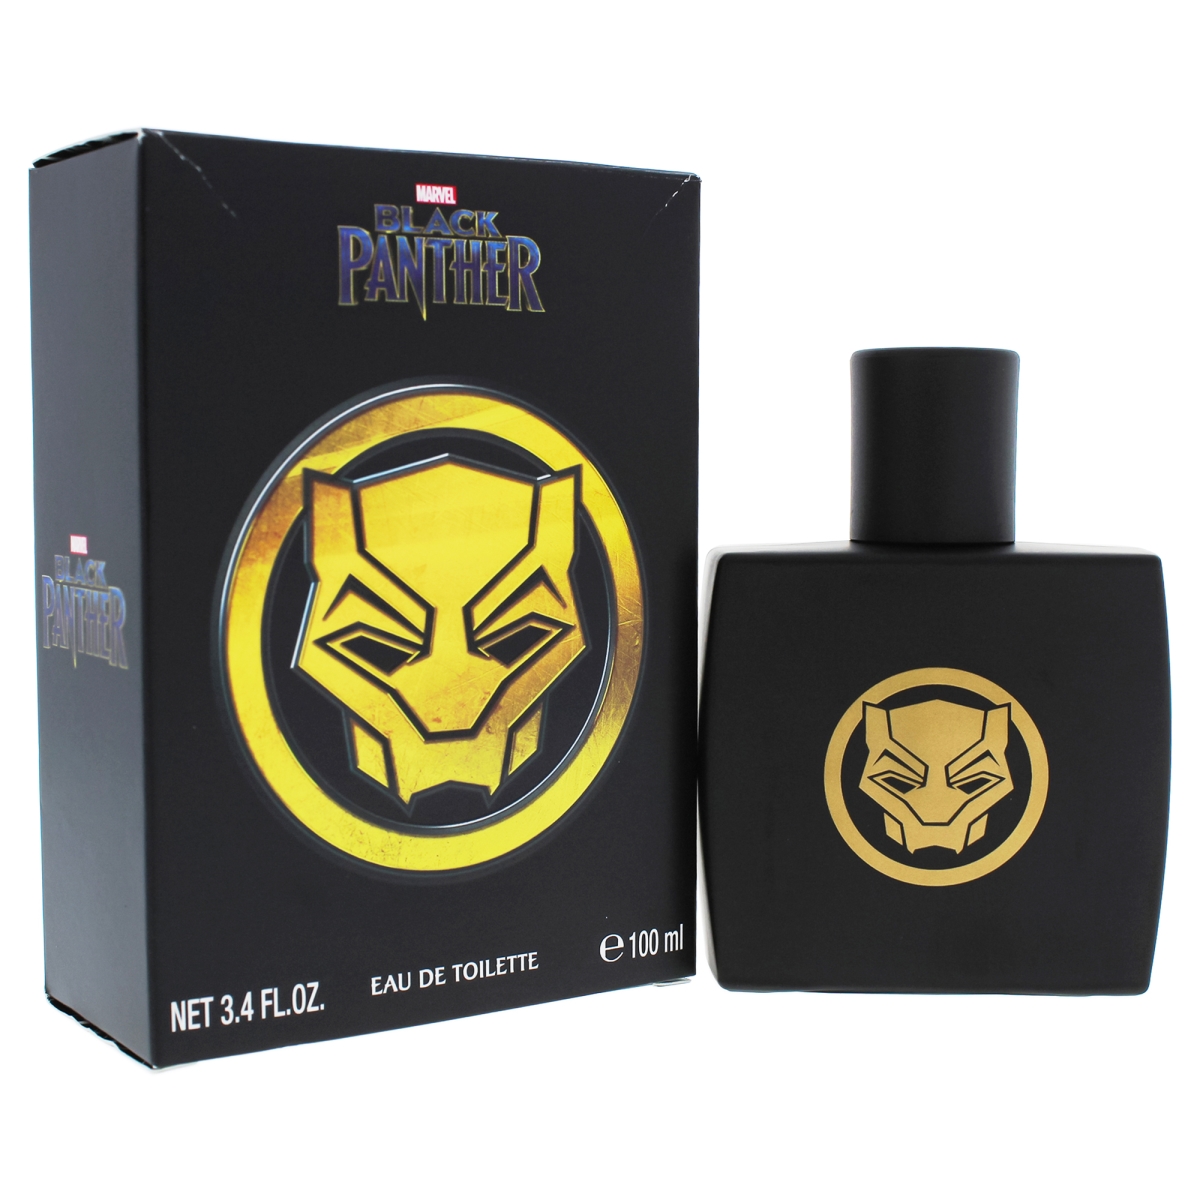 I0085183 Black Panther Cologne Edt Spray For Kids - 3.4 Oz